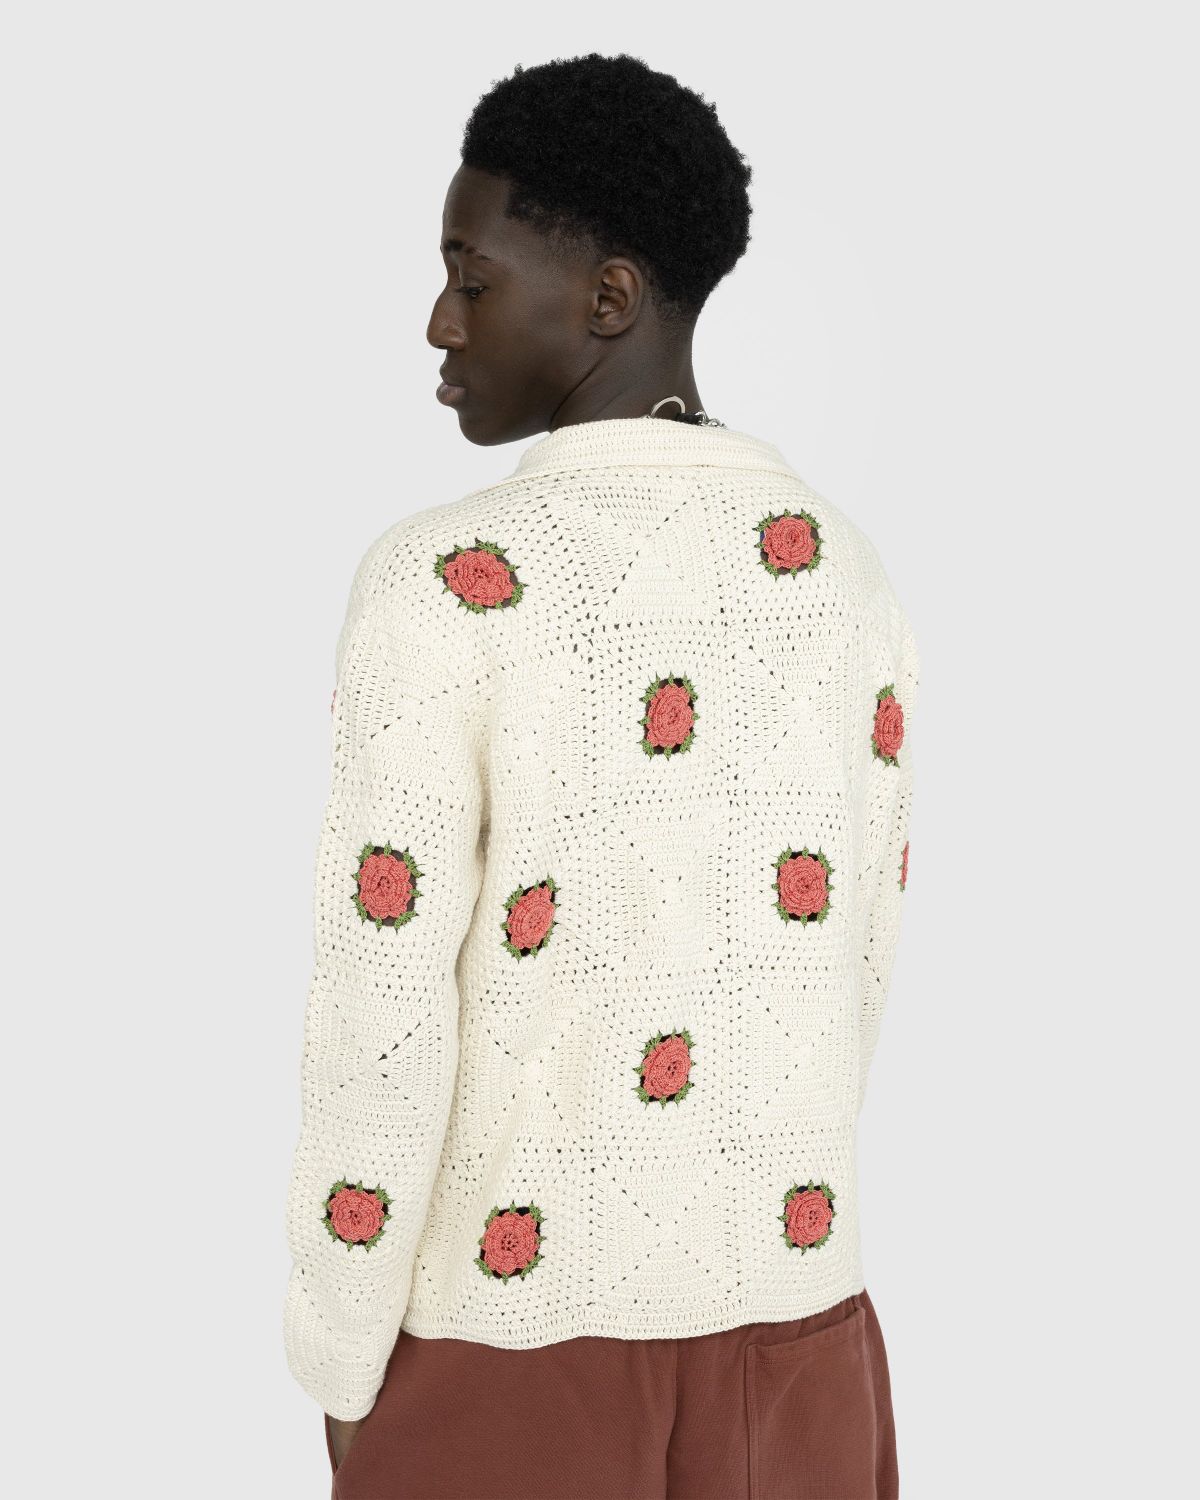 Bode – Rosette Crochet Shirt Longsleeve | Highsnobiety Shop